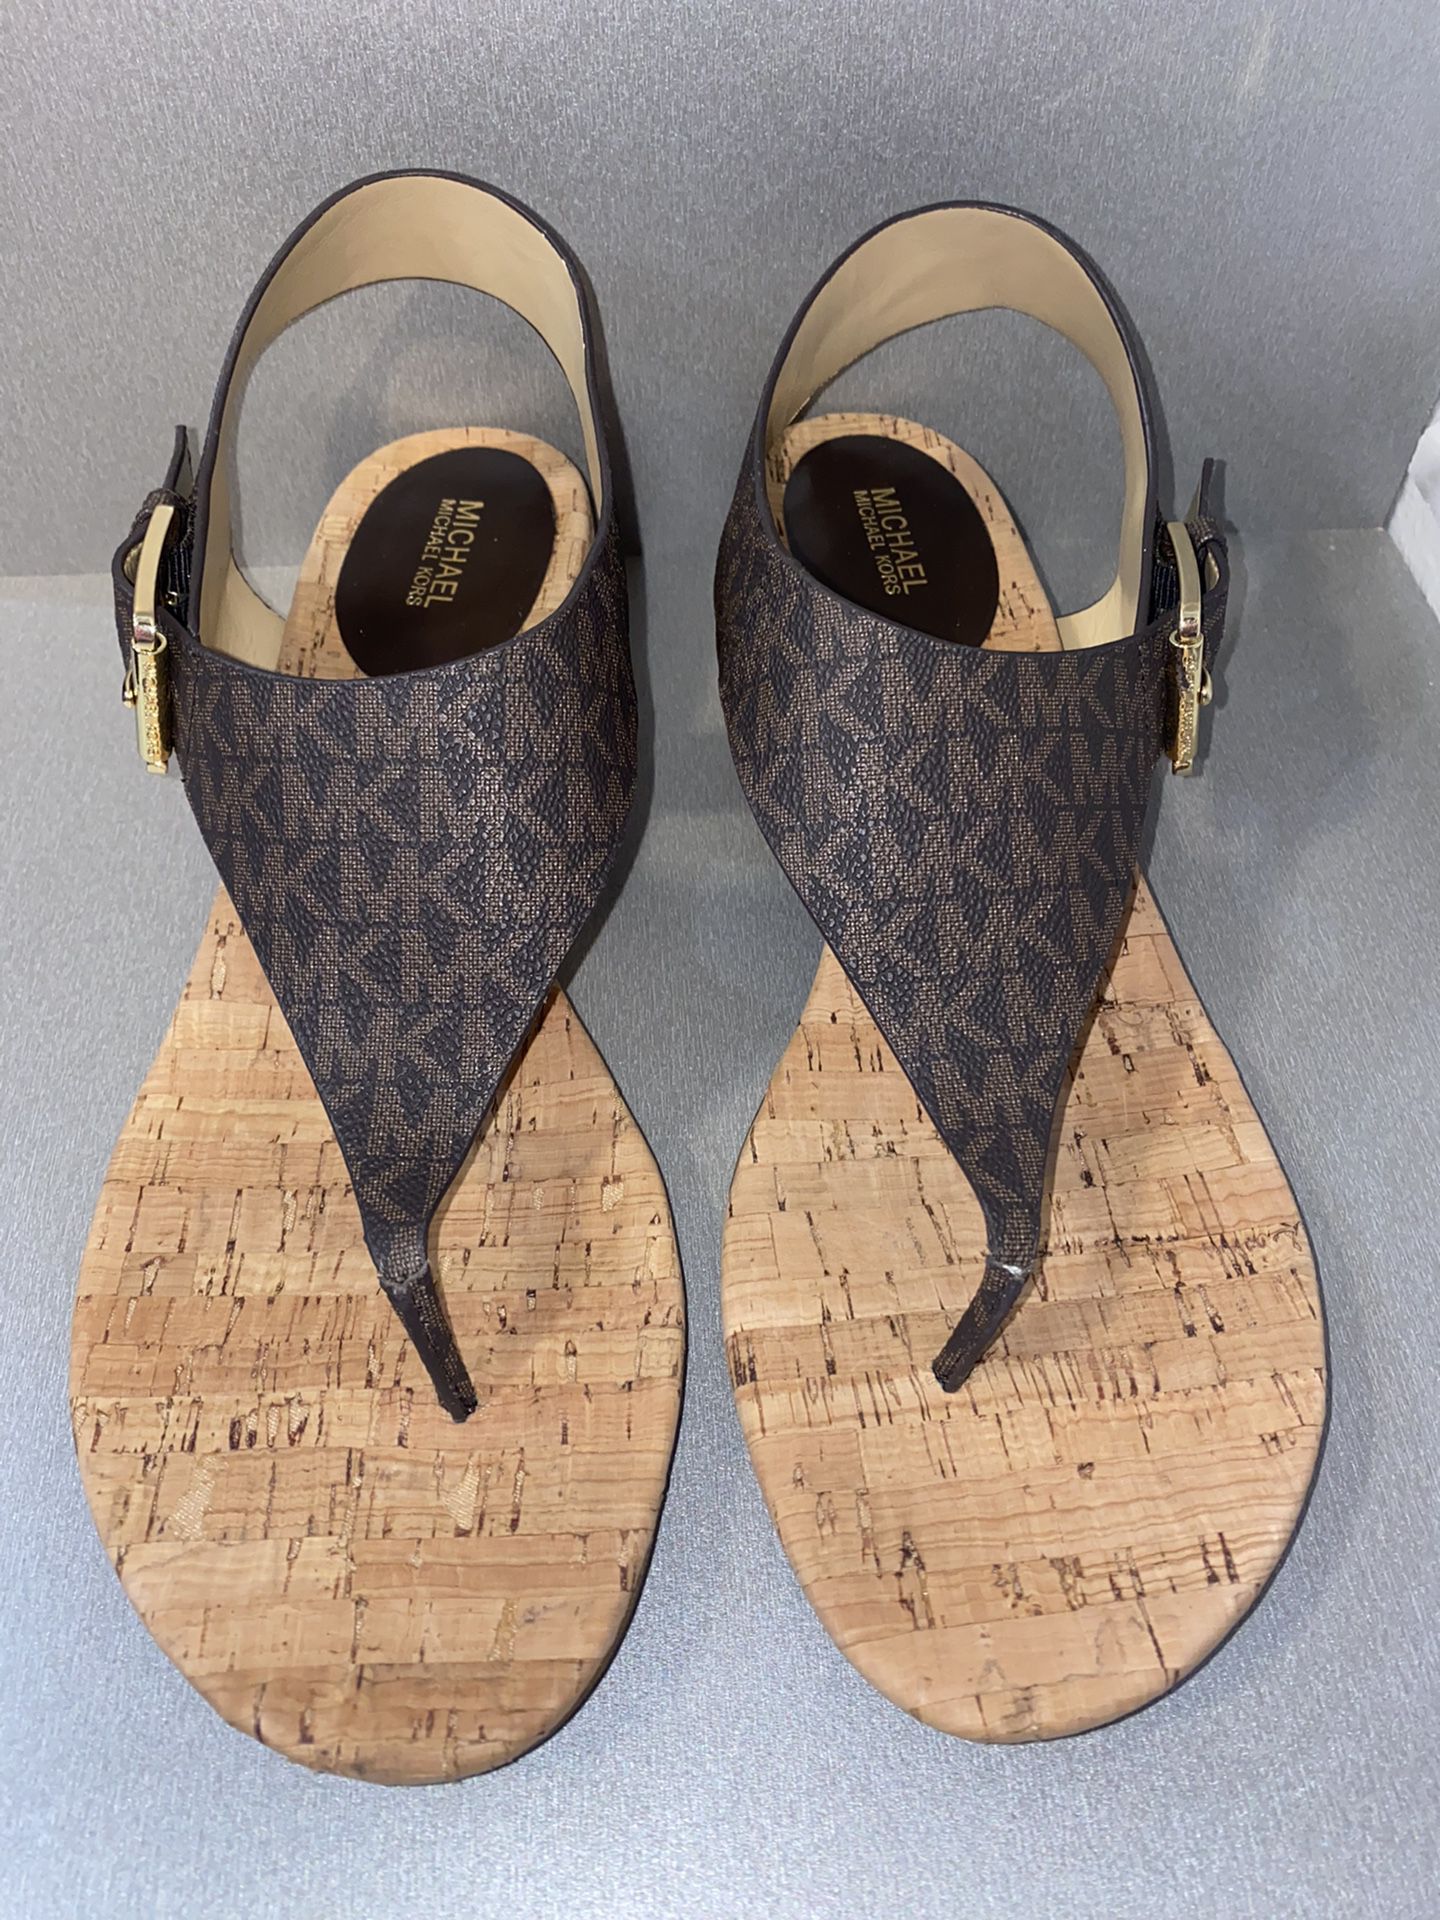 Koge Derved At give tilladelse Women's Size 11 Michael Kors Shoes for Sale in Lake Worth, FL - OfferUp